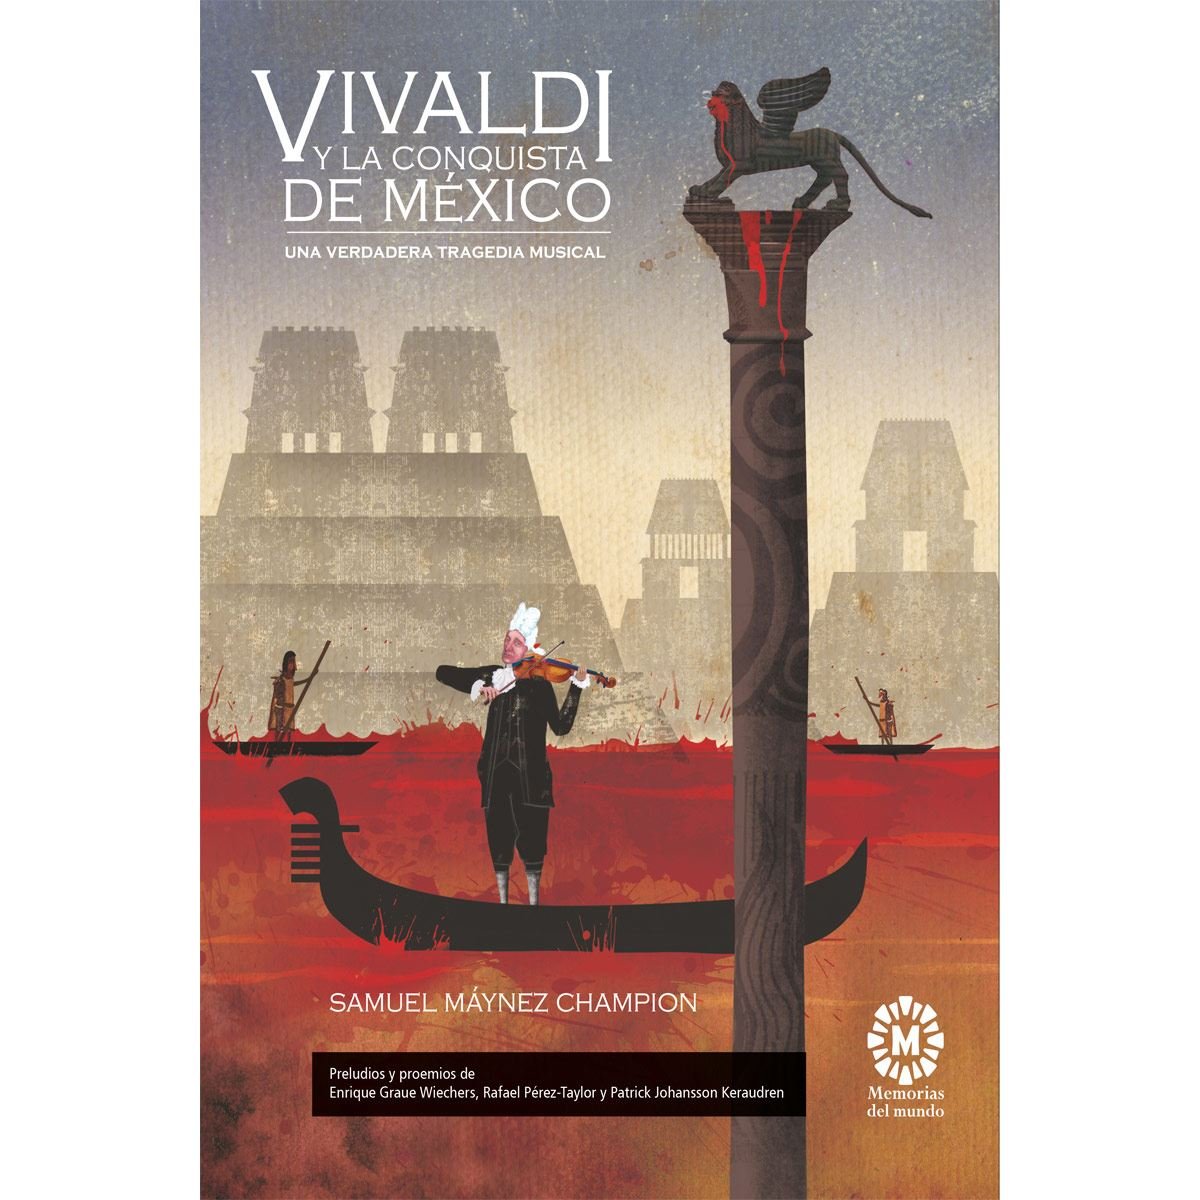 Vivaldi y la conquista de México